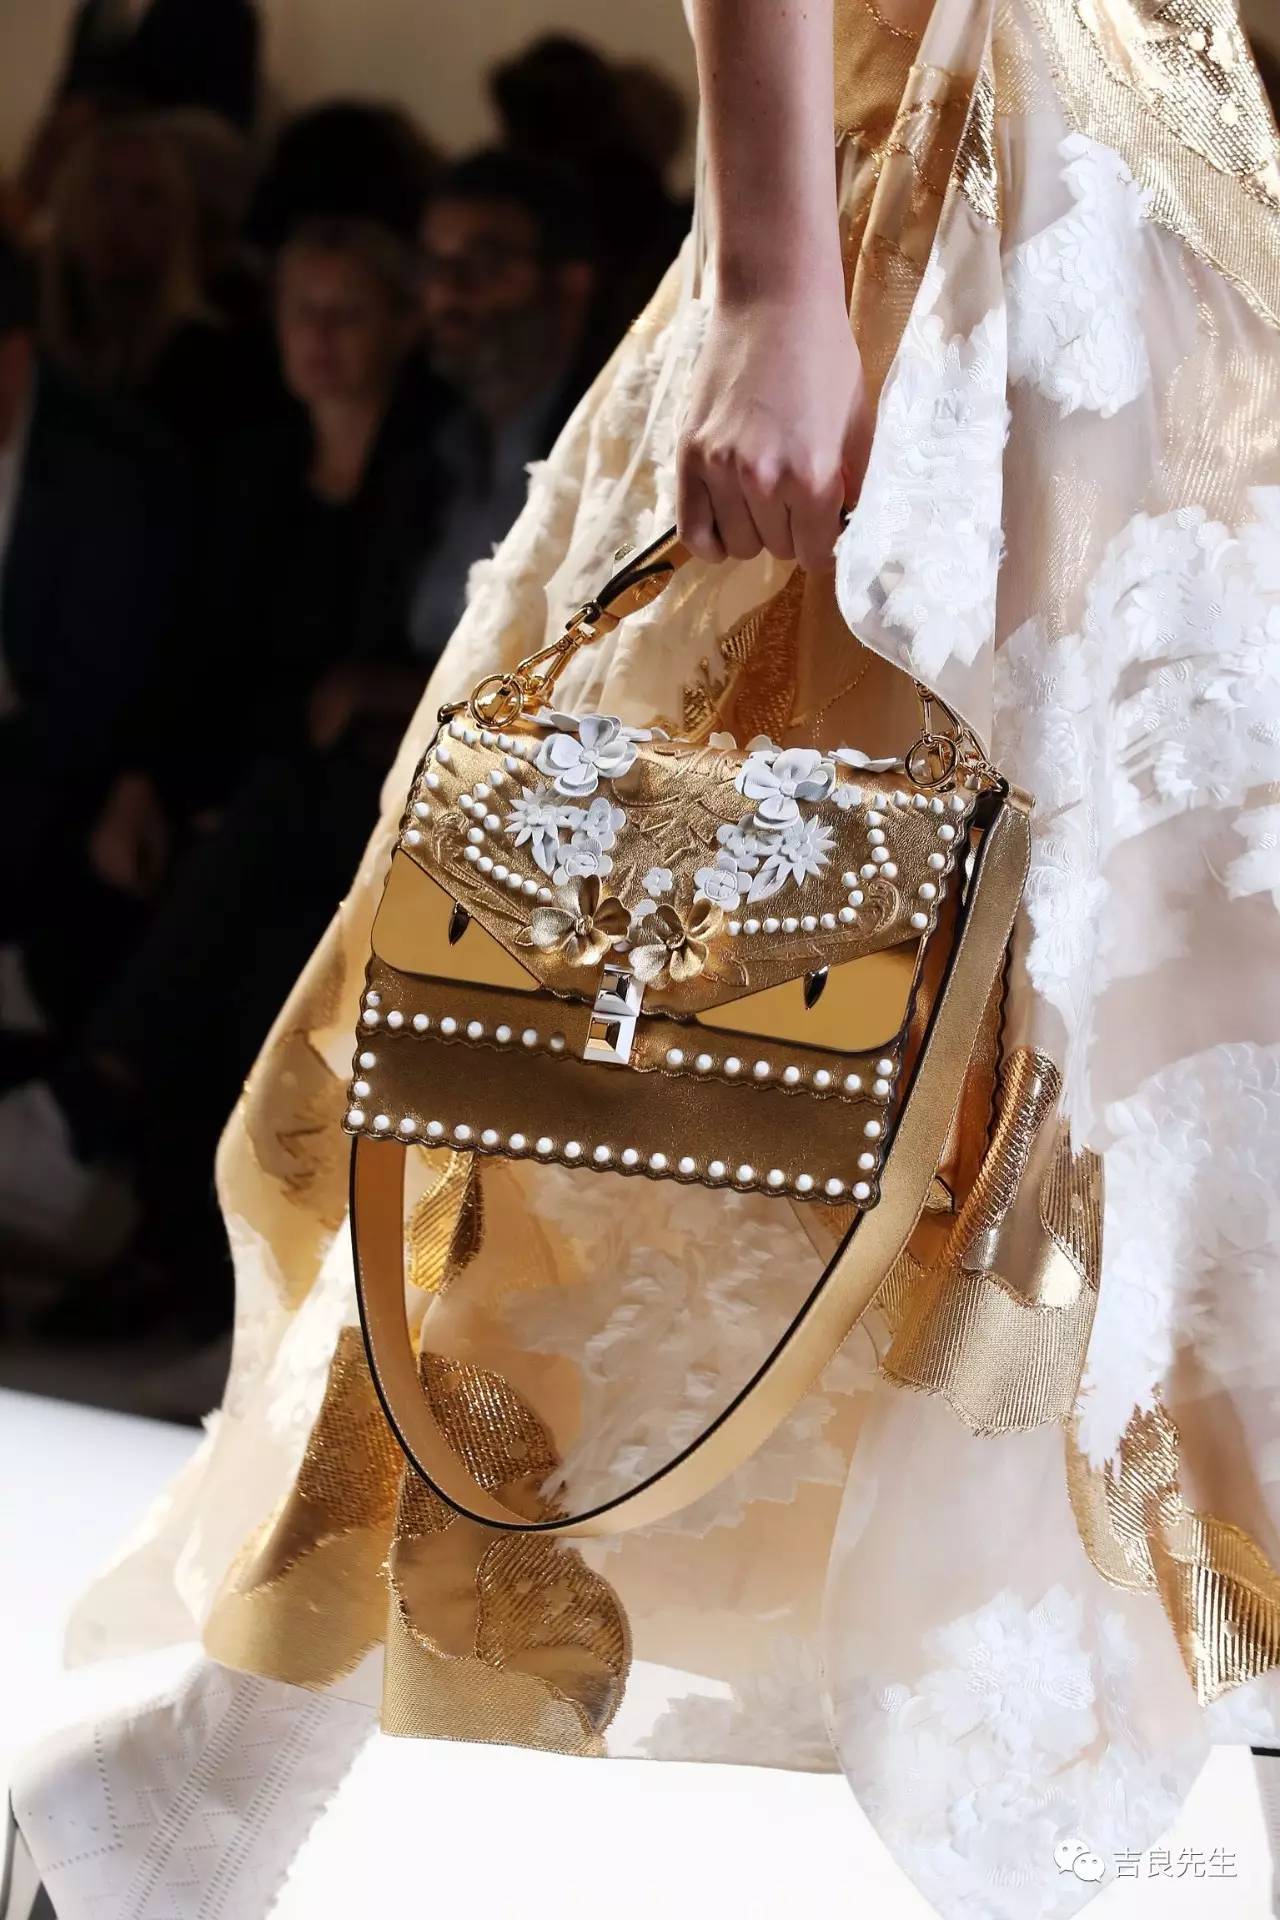 Fendi把最奢华的法国皇室风格带给了包包,没有